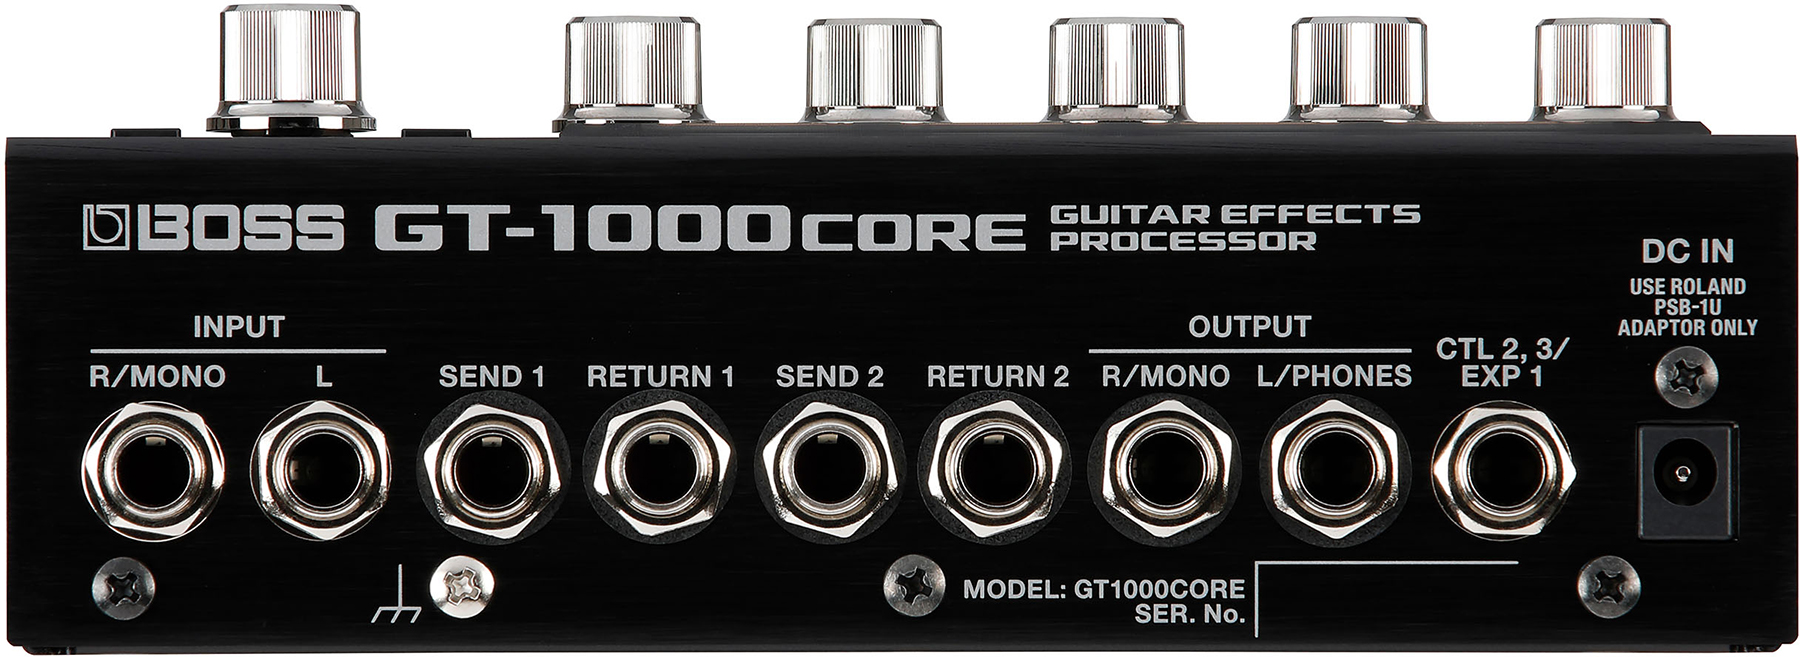 Boss Gt1000core Guitar Effects Processor - Simulacion de modelado de amplificador de guitarra - Variation 1